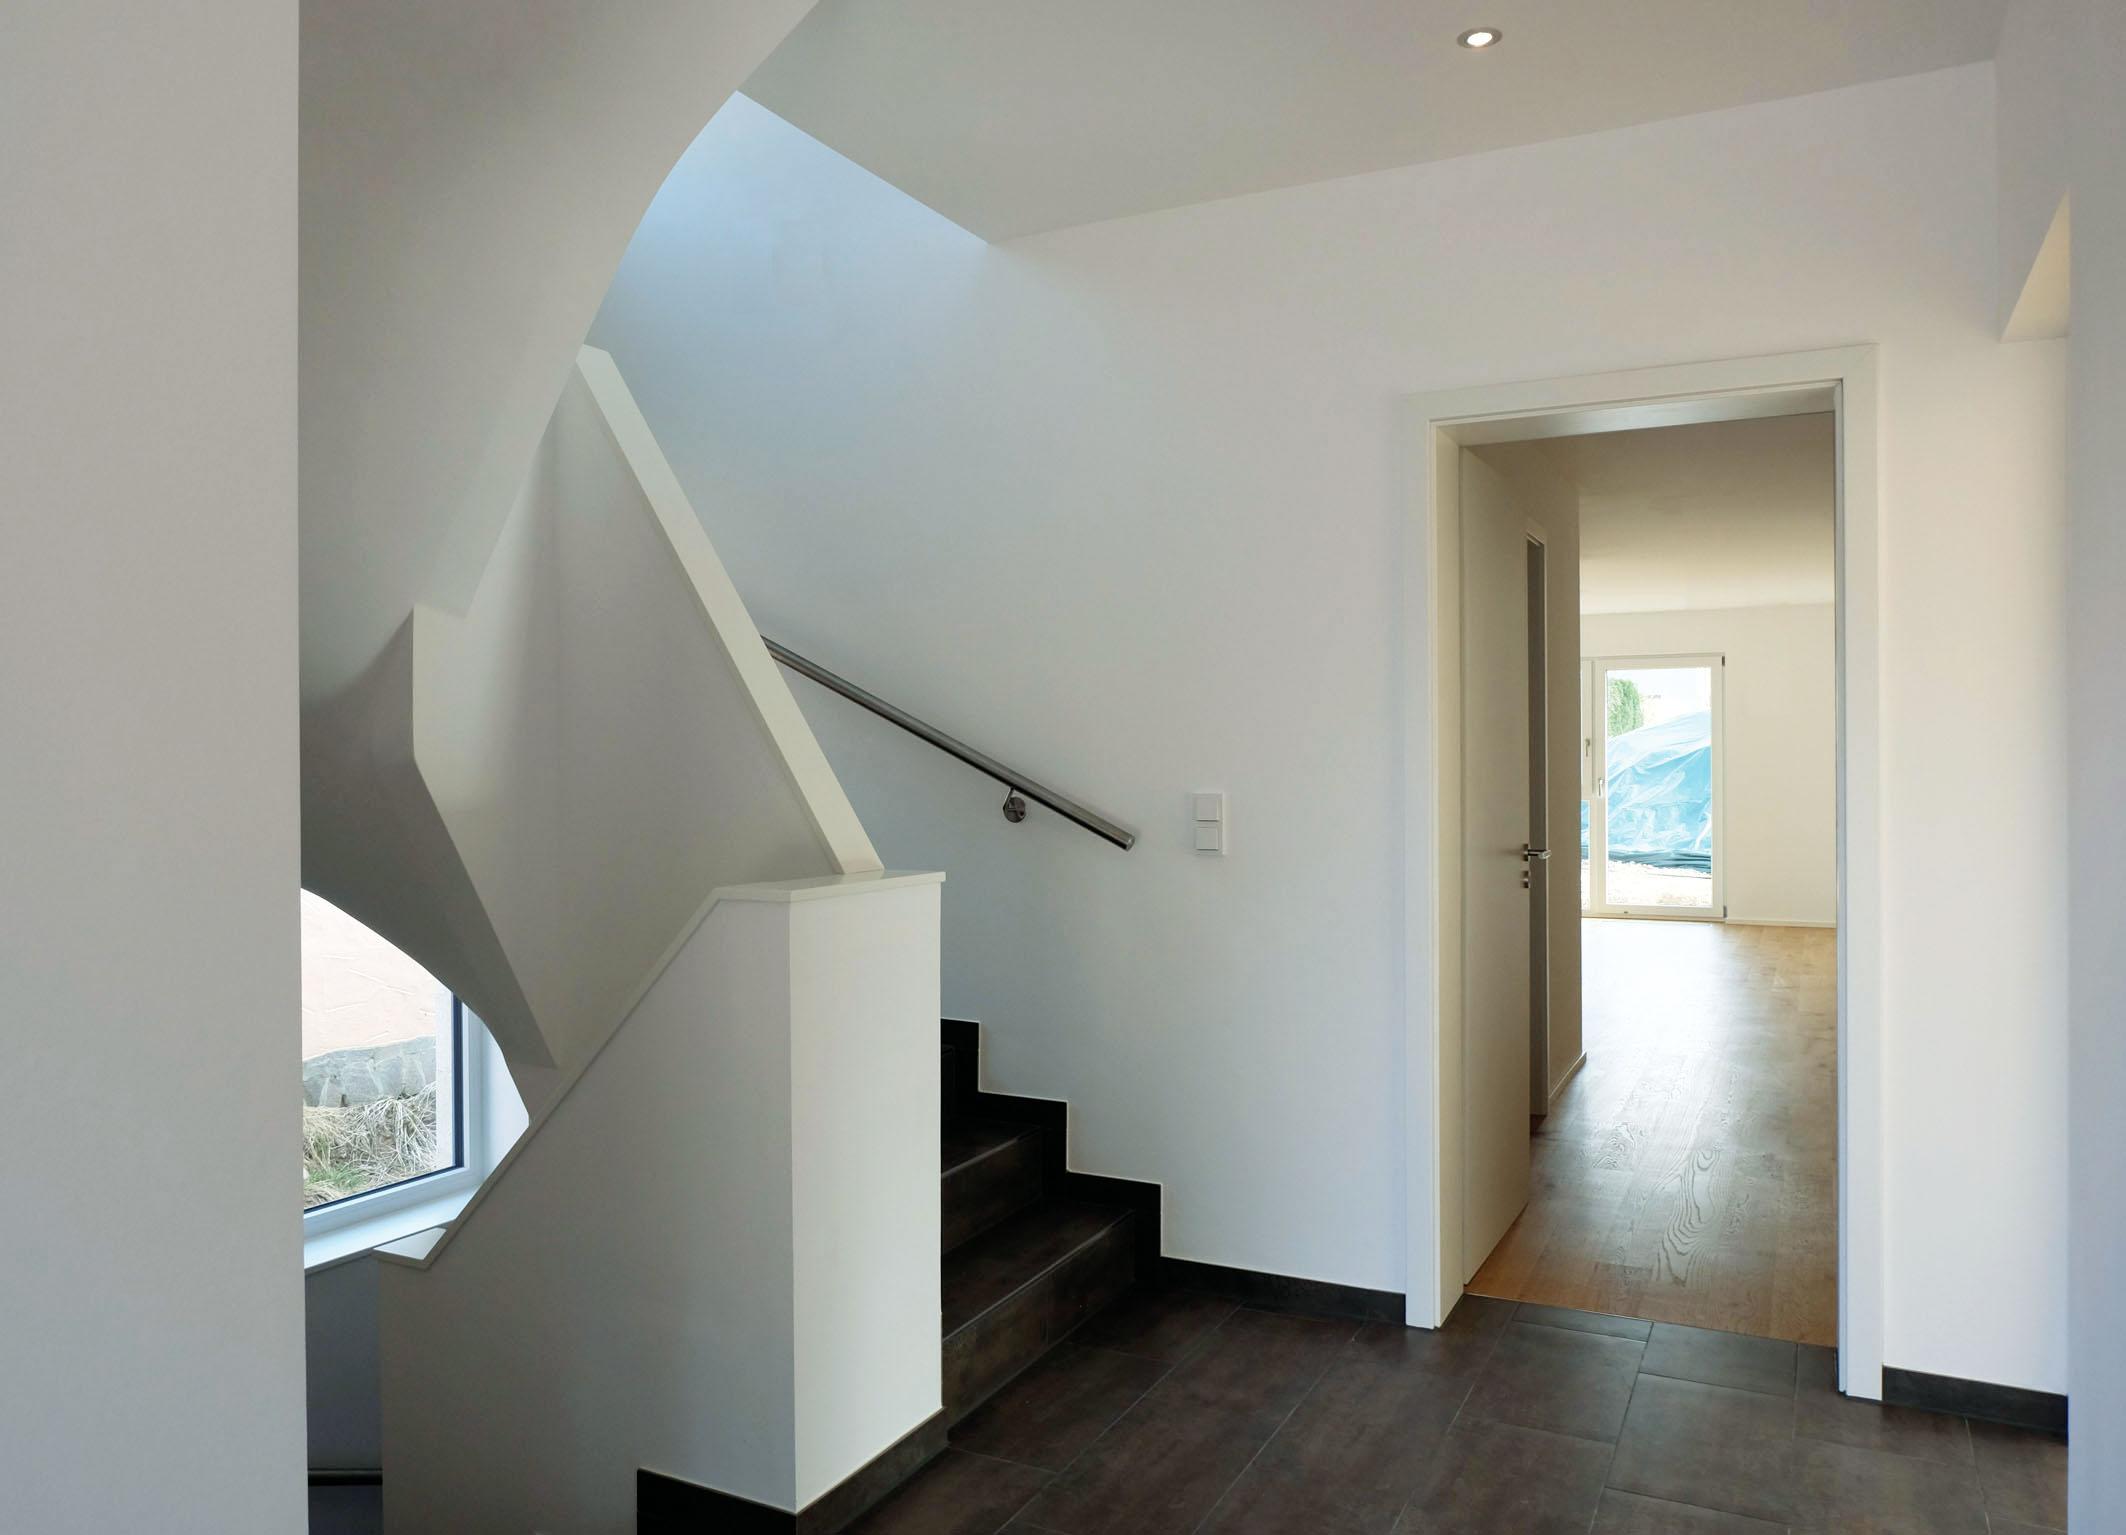 Eingangsbereich und Treppe zum 1. OG #architektenhaus ©Resonatorcoop